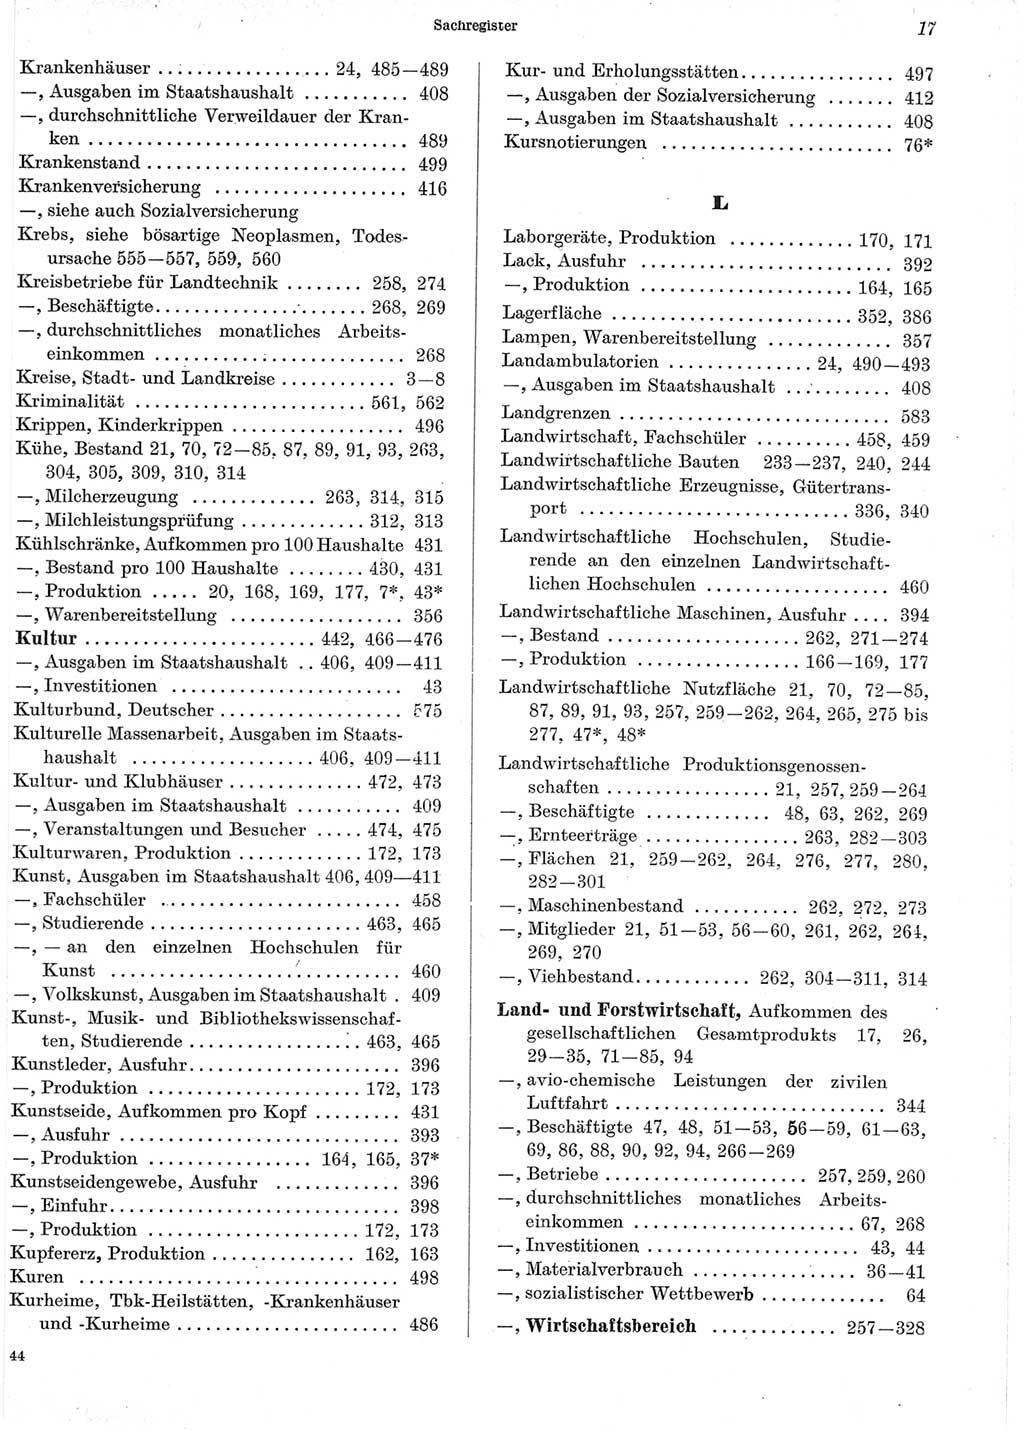 Statistisches Jahrbuch der Deutschen Demokratischen Republik (DDR) 1965, Seite 17 (Stat. Jb. DDR 1965, S. 17)